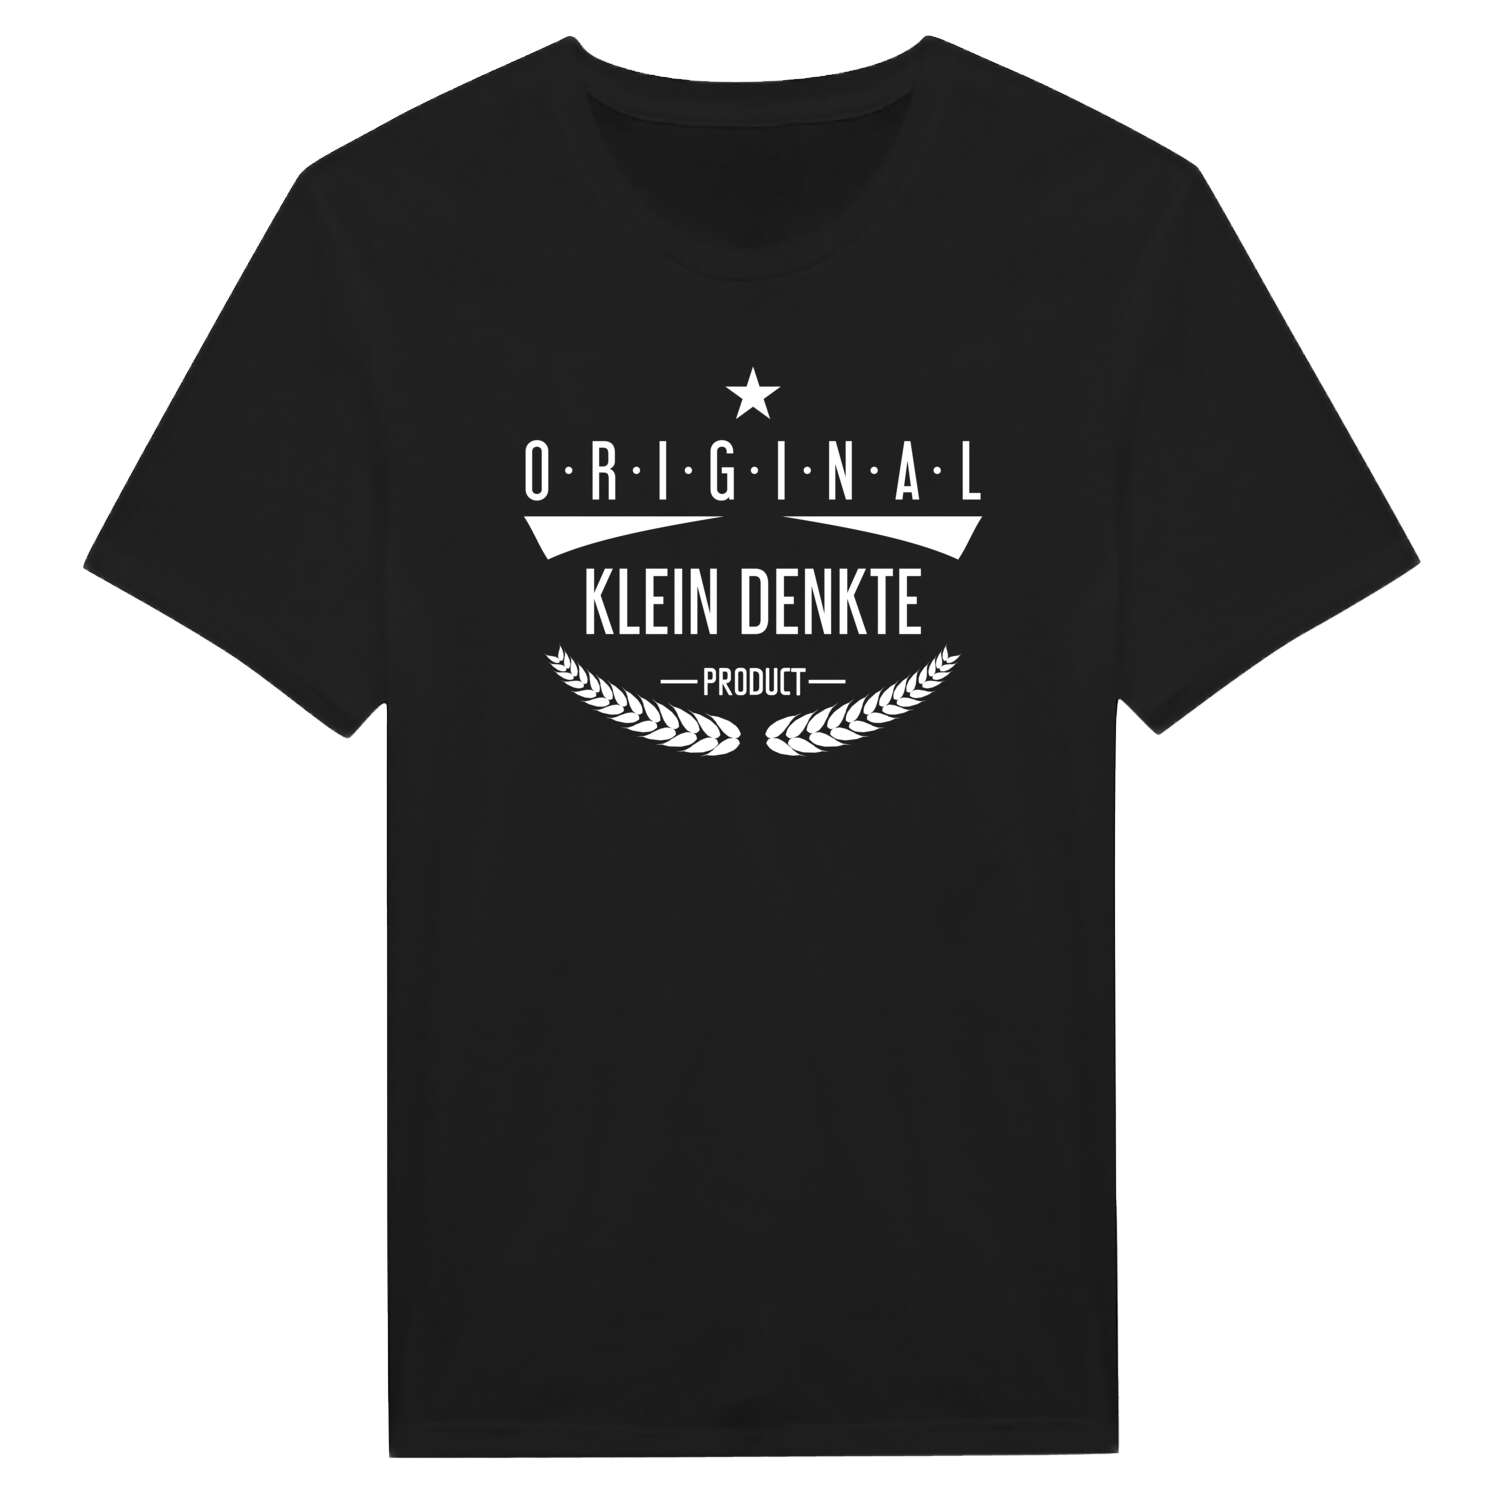 Klein Denkte T-Shirt »Original Product«